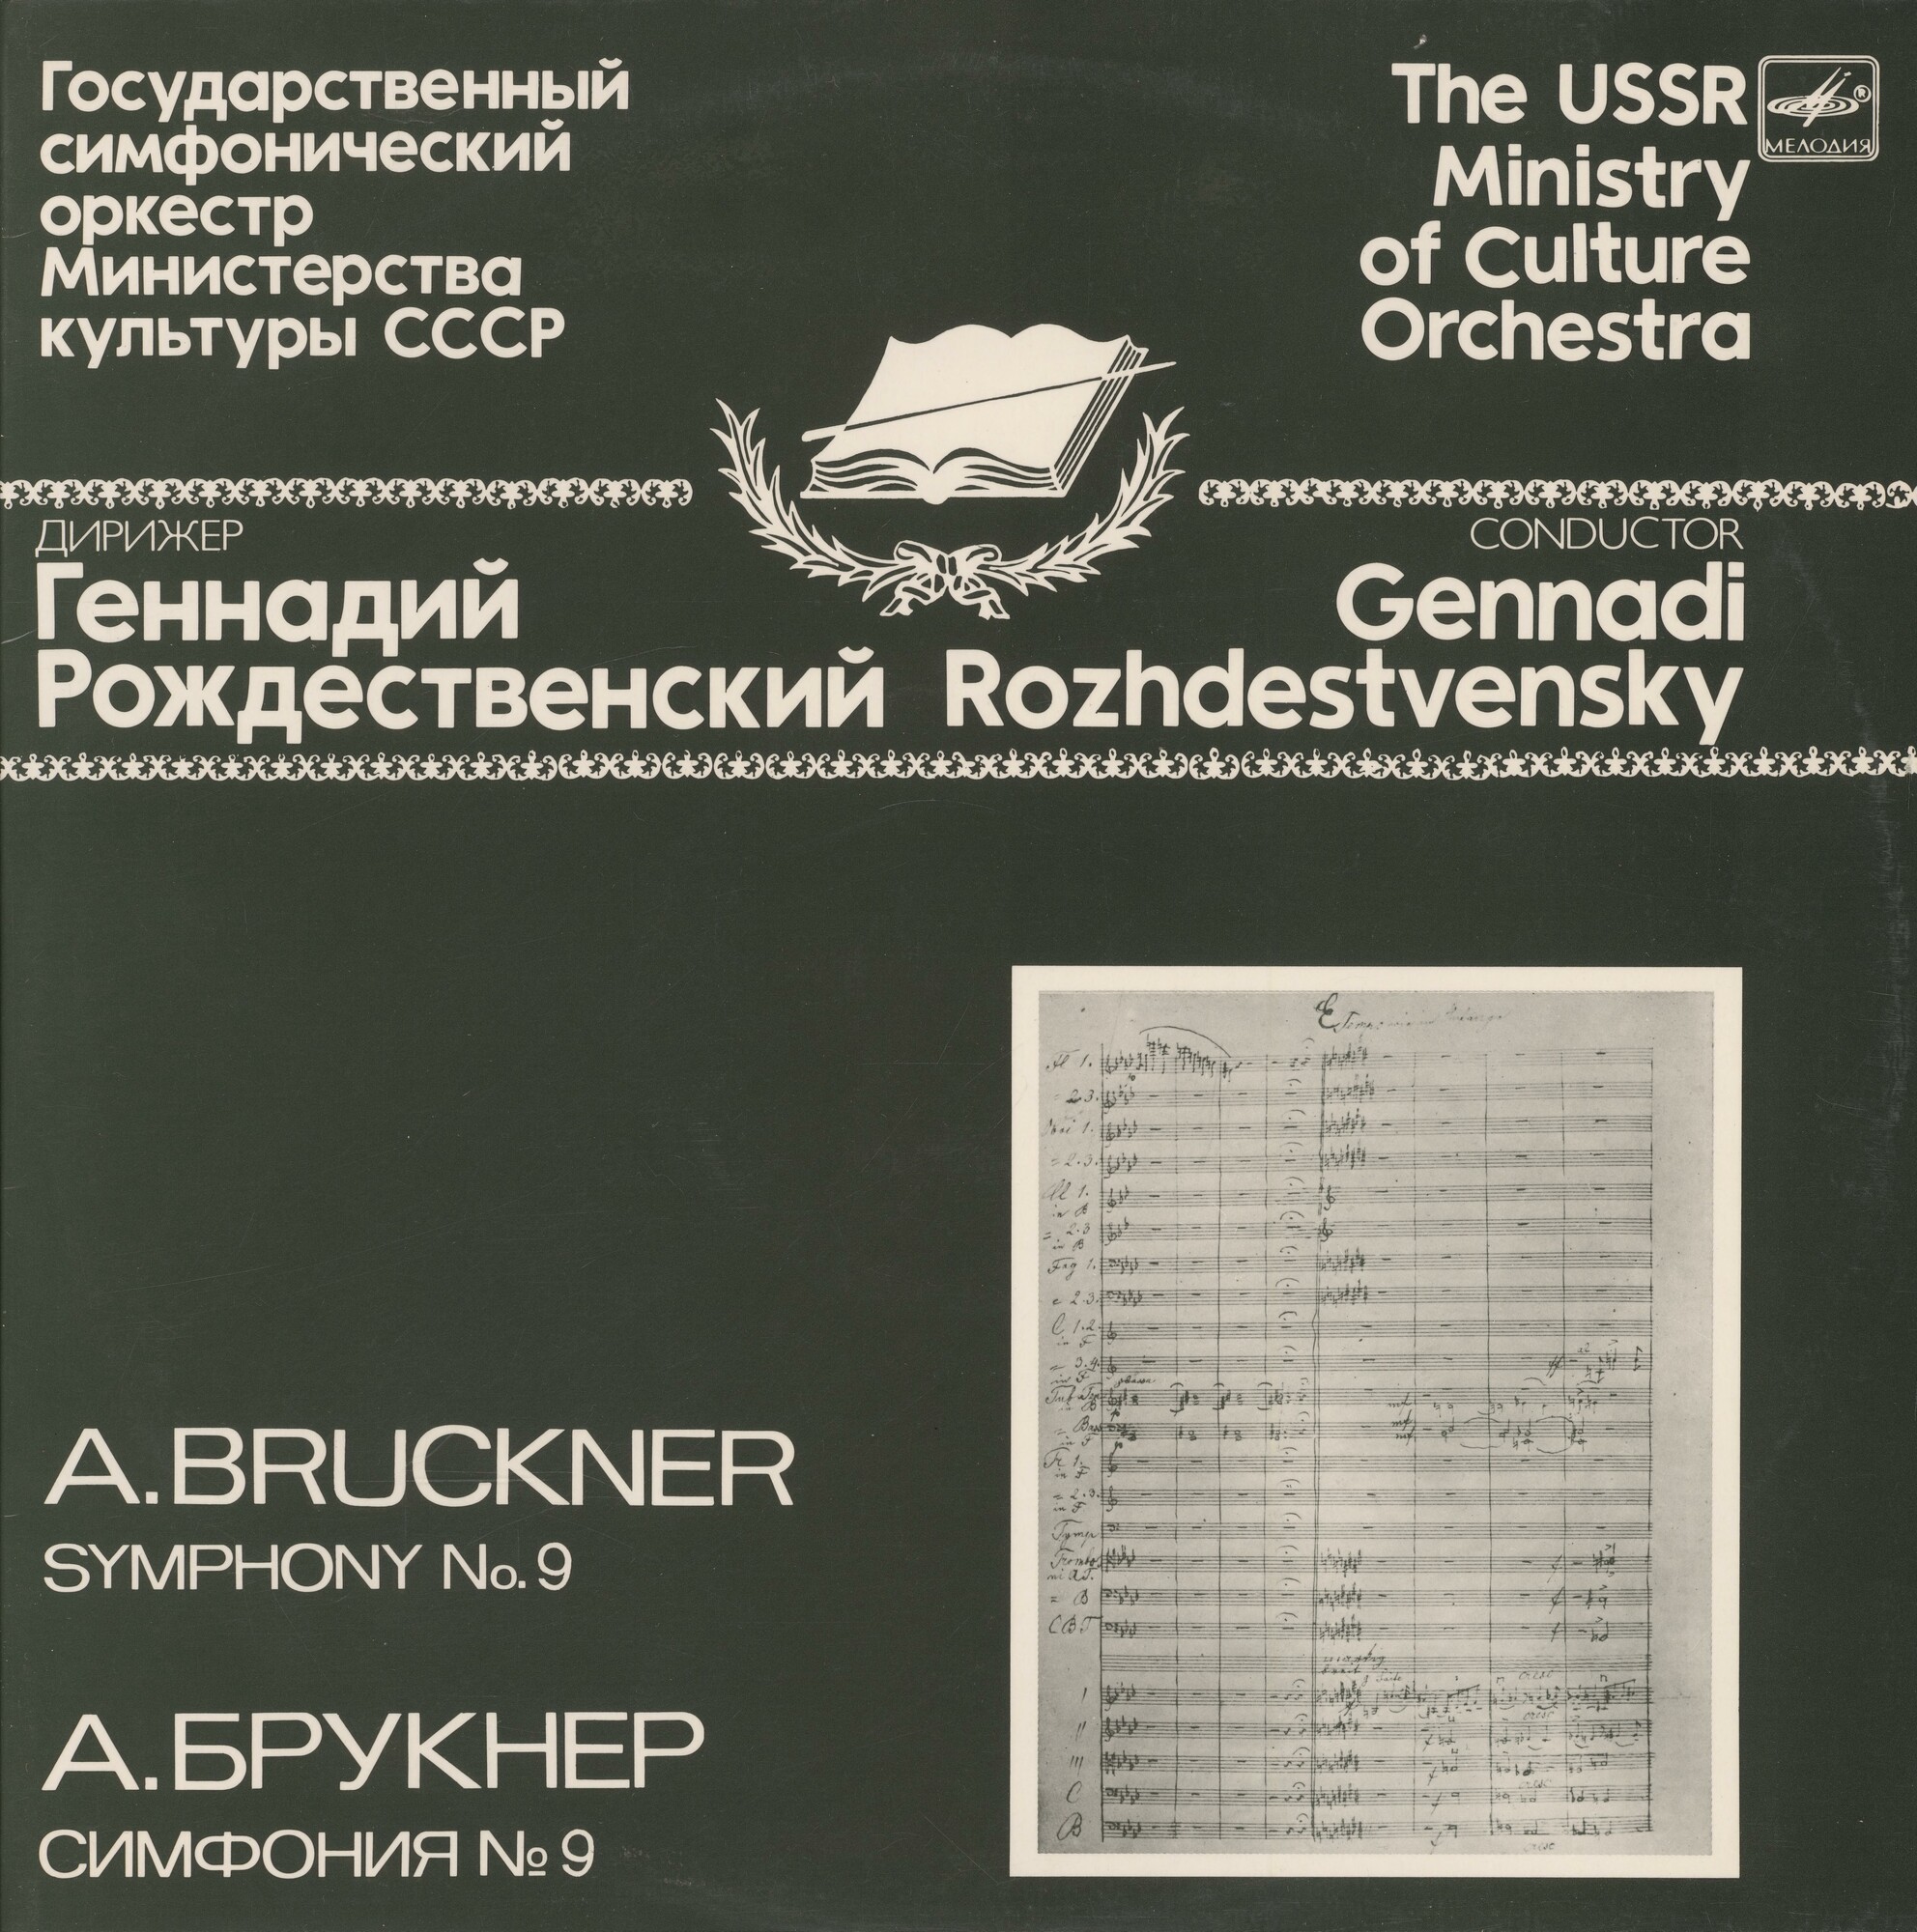 ГЕННАДИЙ РОЖДЕСТВЕНСКИЙ  исполняет  симфонии А. БРУКНЕРА (1824-1896)